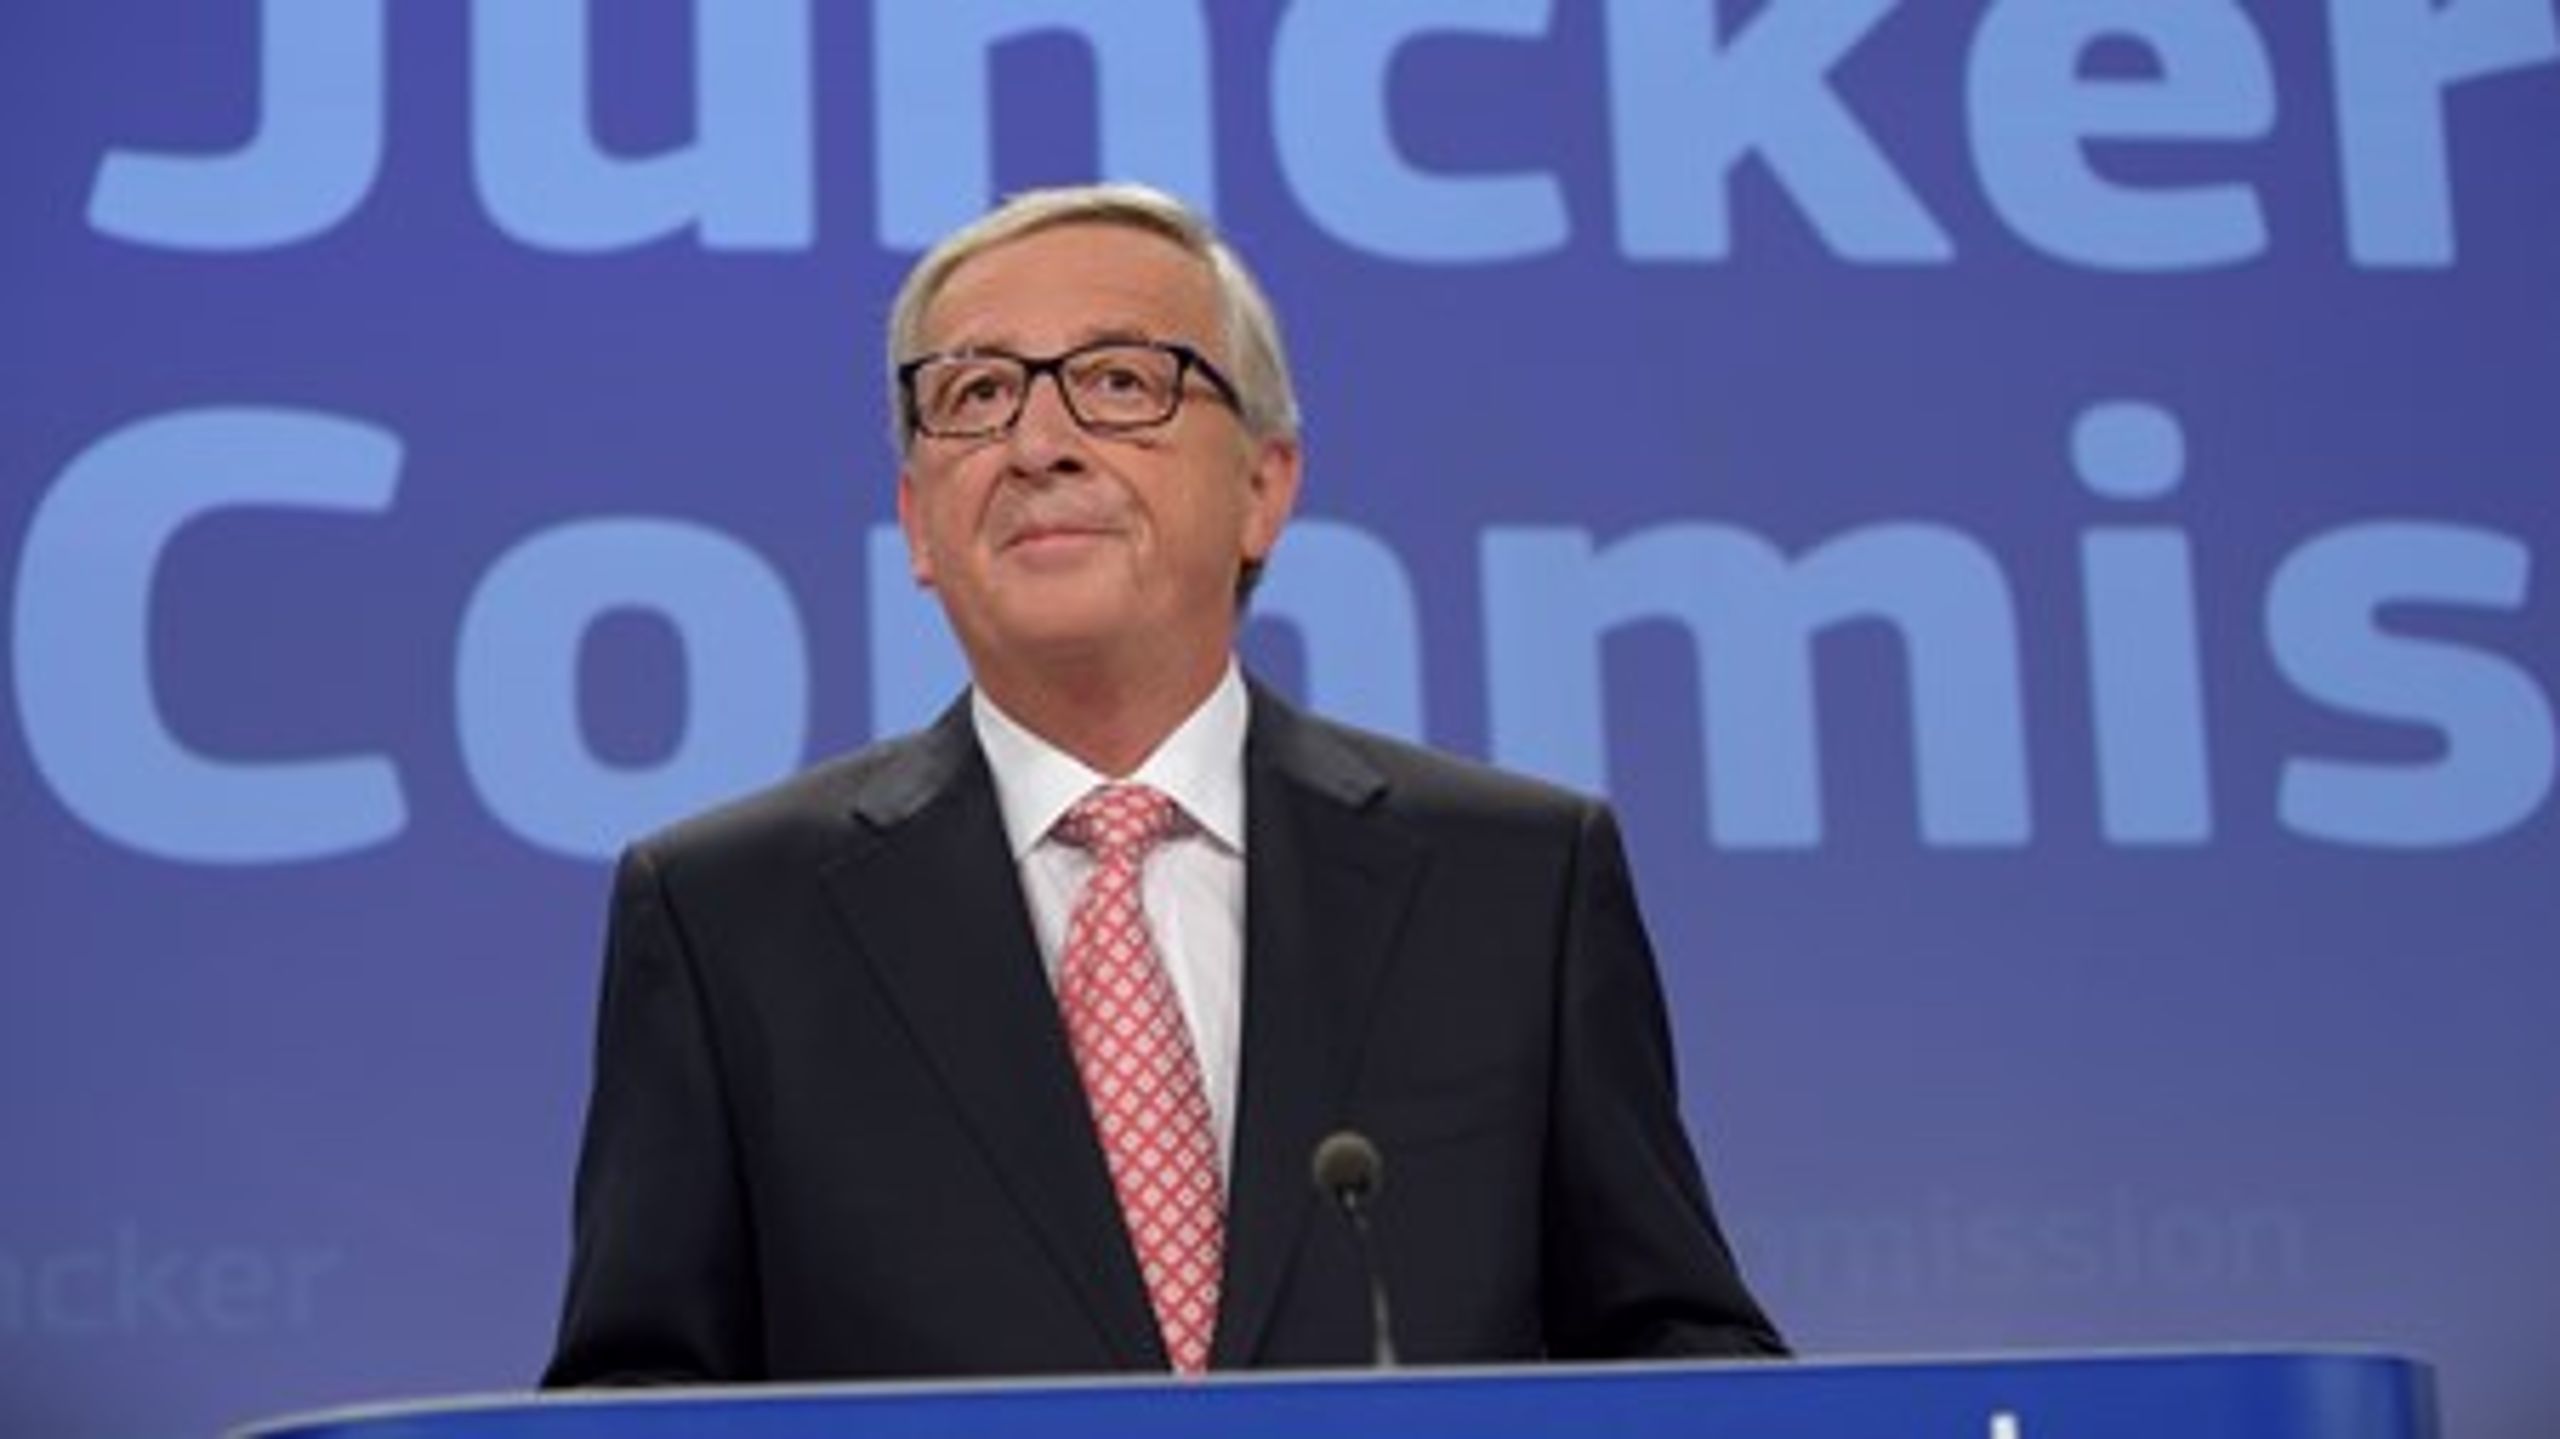 Jean-Claude Junckers Kommission har ikke nok fokus på bæredygtighed og grøn vækst, mener en række europa-parlamentarikere.